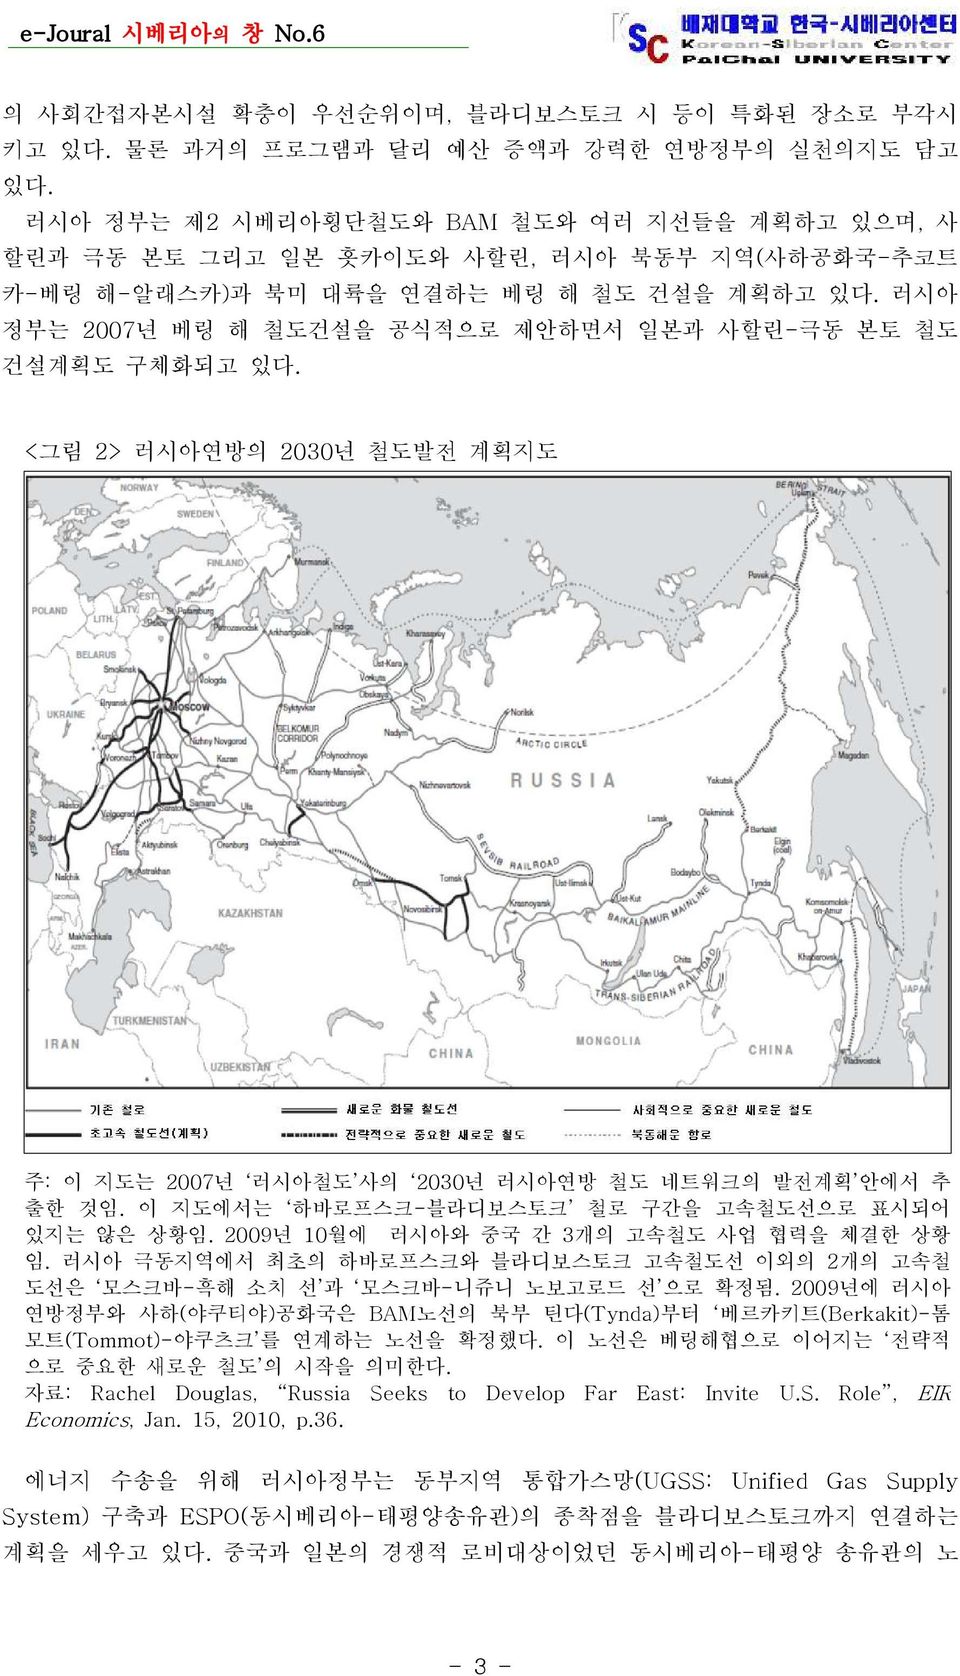 러시아 정부는 2007년 베링 해 철도건설을 공식적으로 제안하면서 일본과 사할린-극동 본토 철도 건설계획도 구체화되고 있다. < 그림 2> 러시아연방의 2030년 철도발전 계획지도 주: 이 지도는 2007 년 러시아철도 사의 2030 년 러시아연방 철도 네트워크의 발전계획 안에서 추 출한 것임.